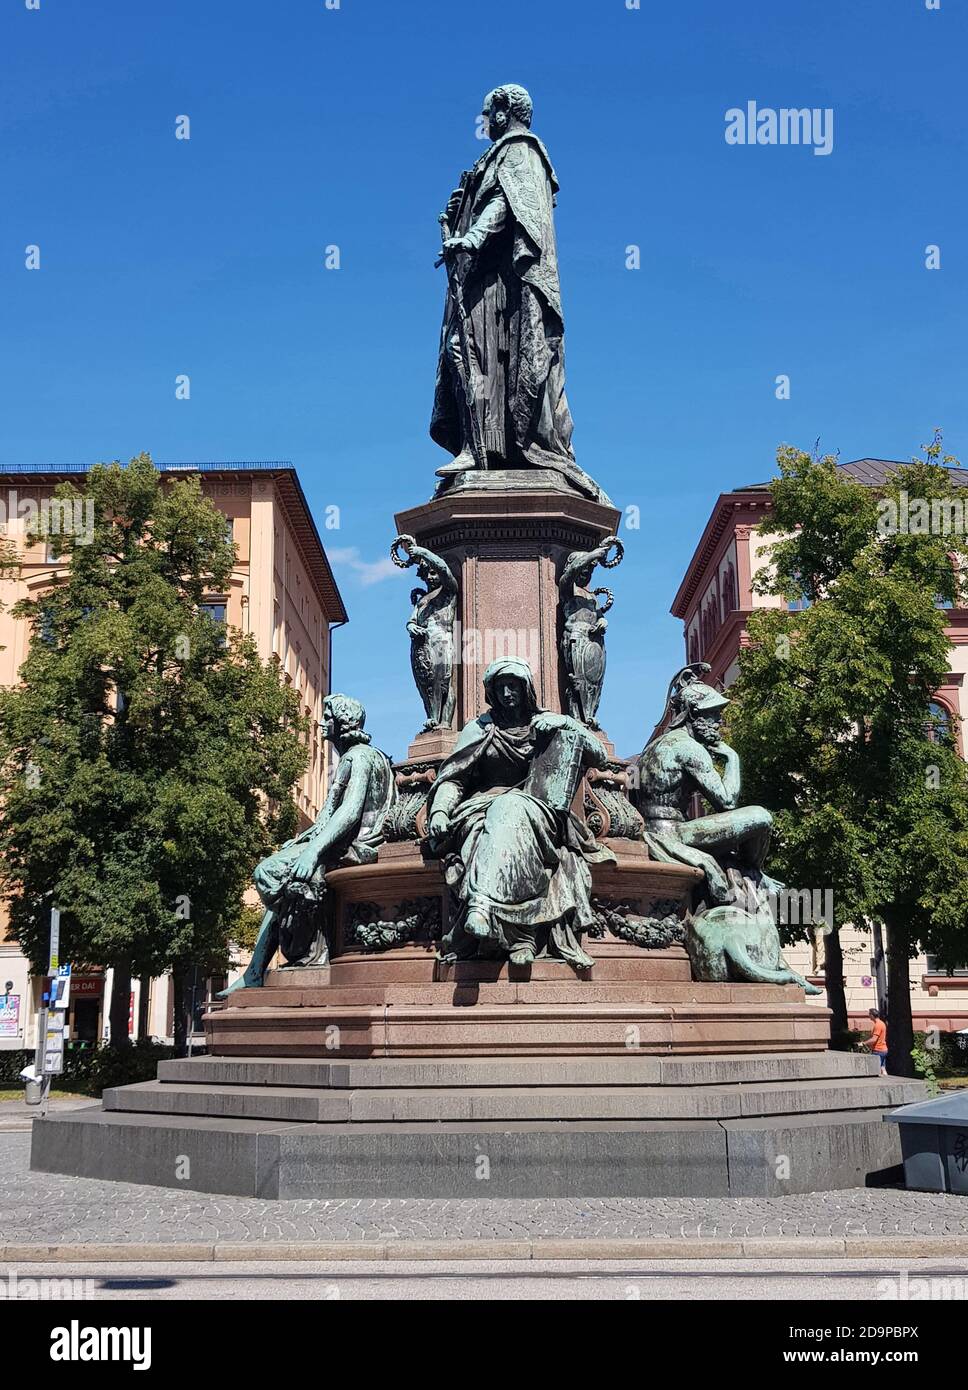 Monumento del rey Maximiliano II, MaxMonument, construido en 1870 por el escultor Kaspar von Zumbusch, es un edificio catalogado Foto de stock